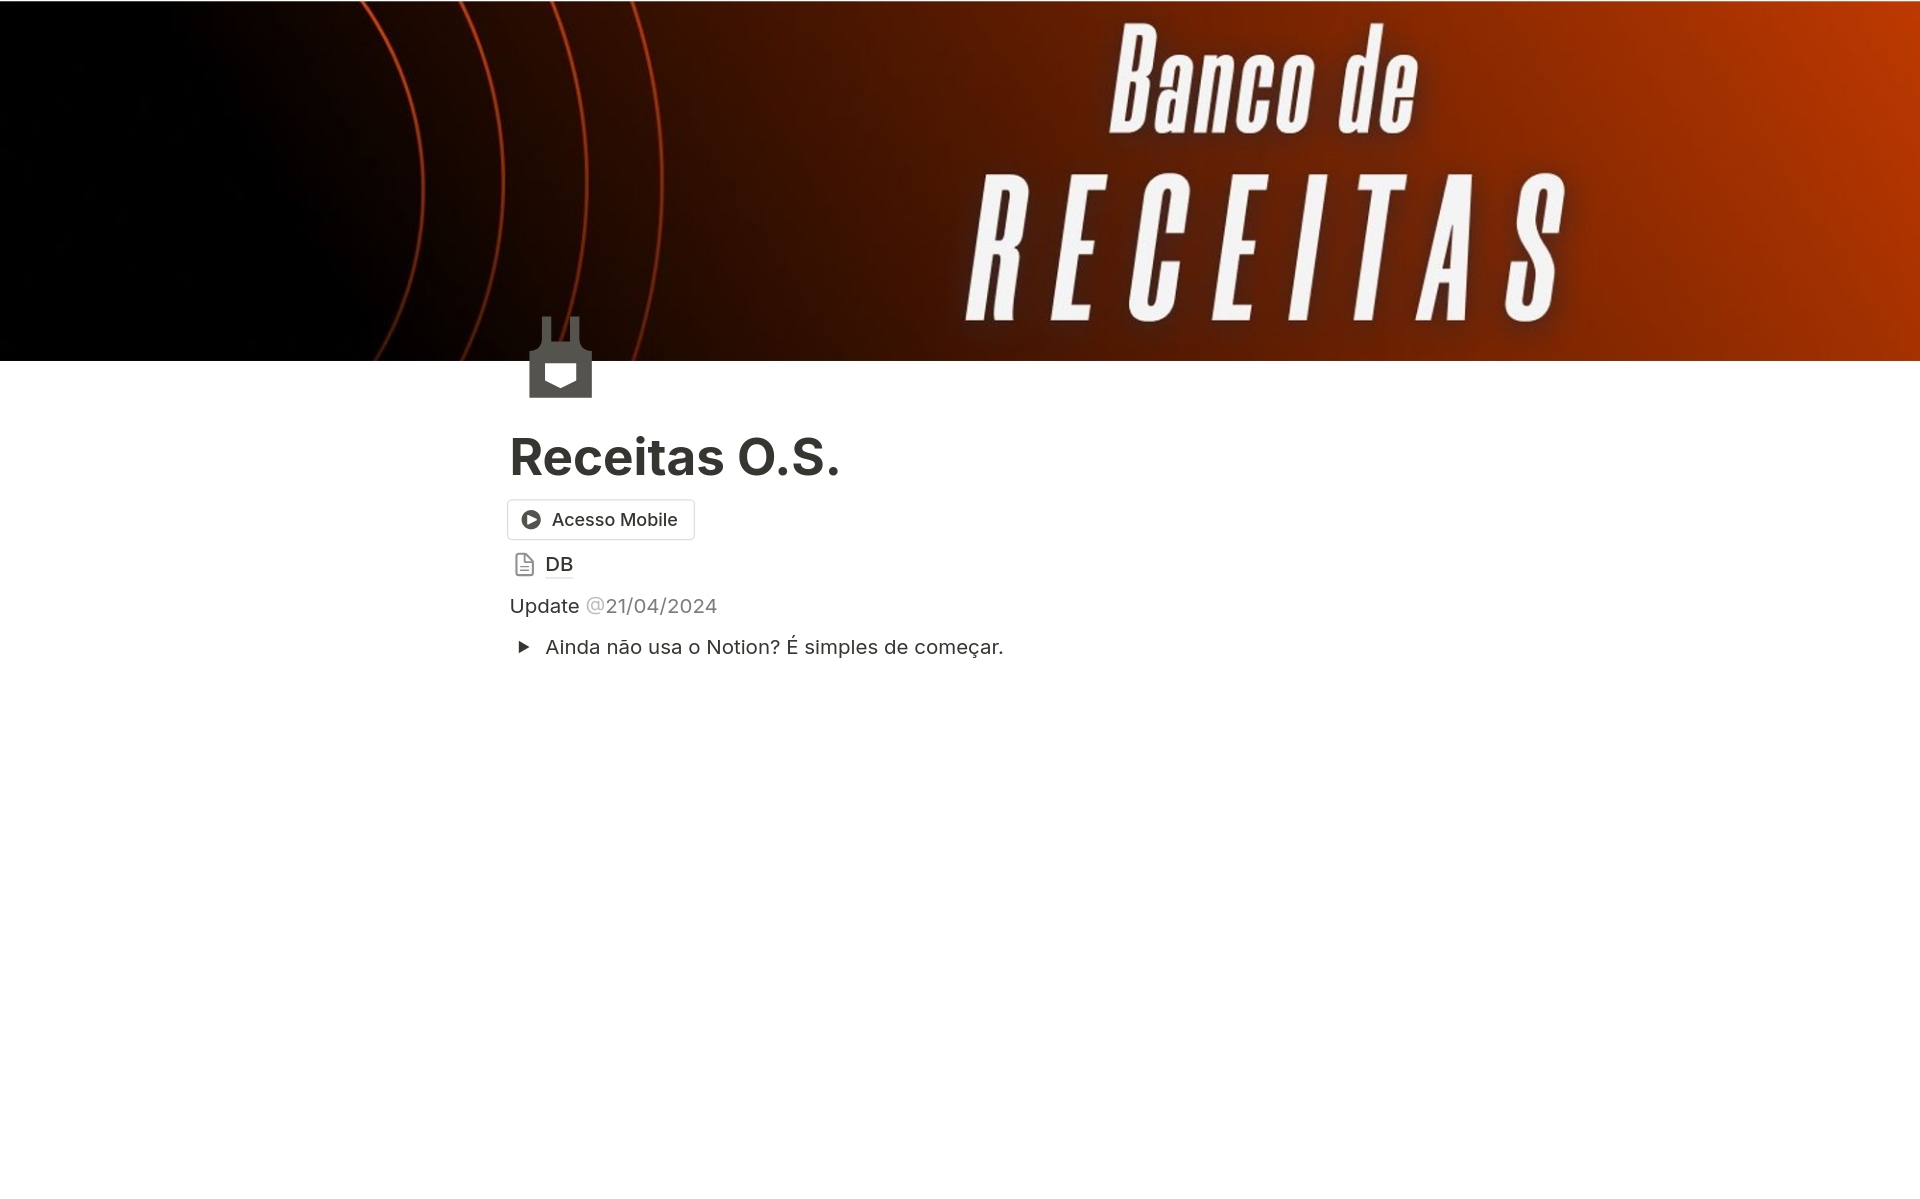 A template preview for Banco de Receitas